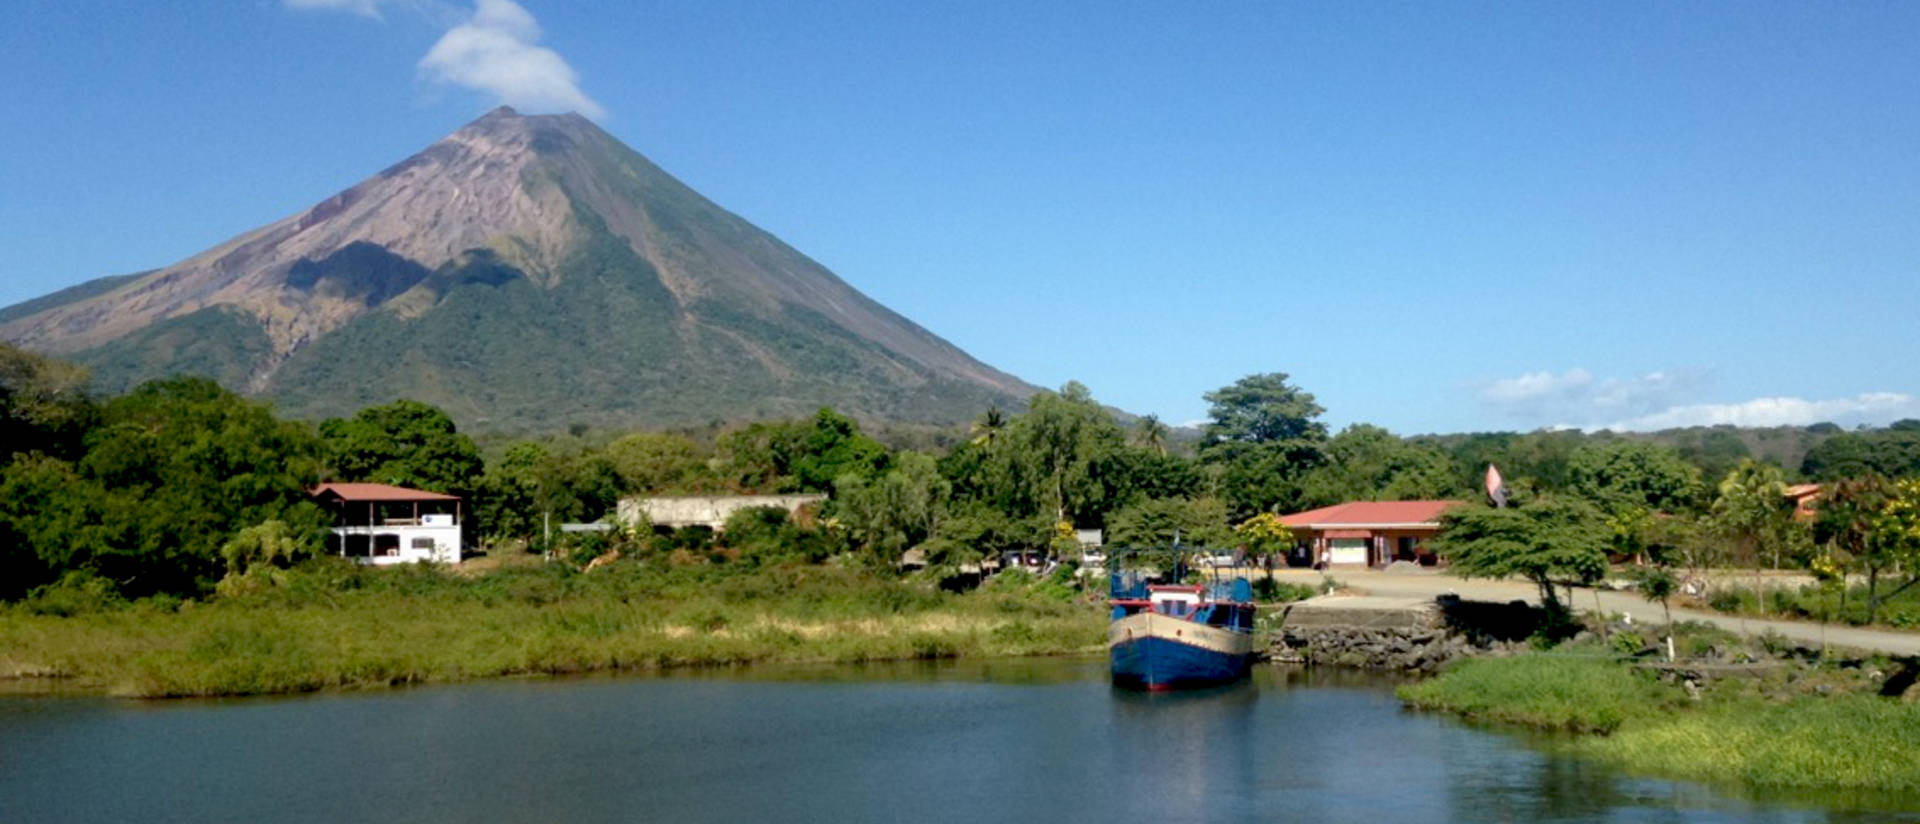 Ometepe, a volcanic island in Lake Nicaragua